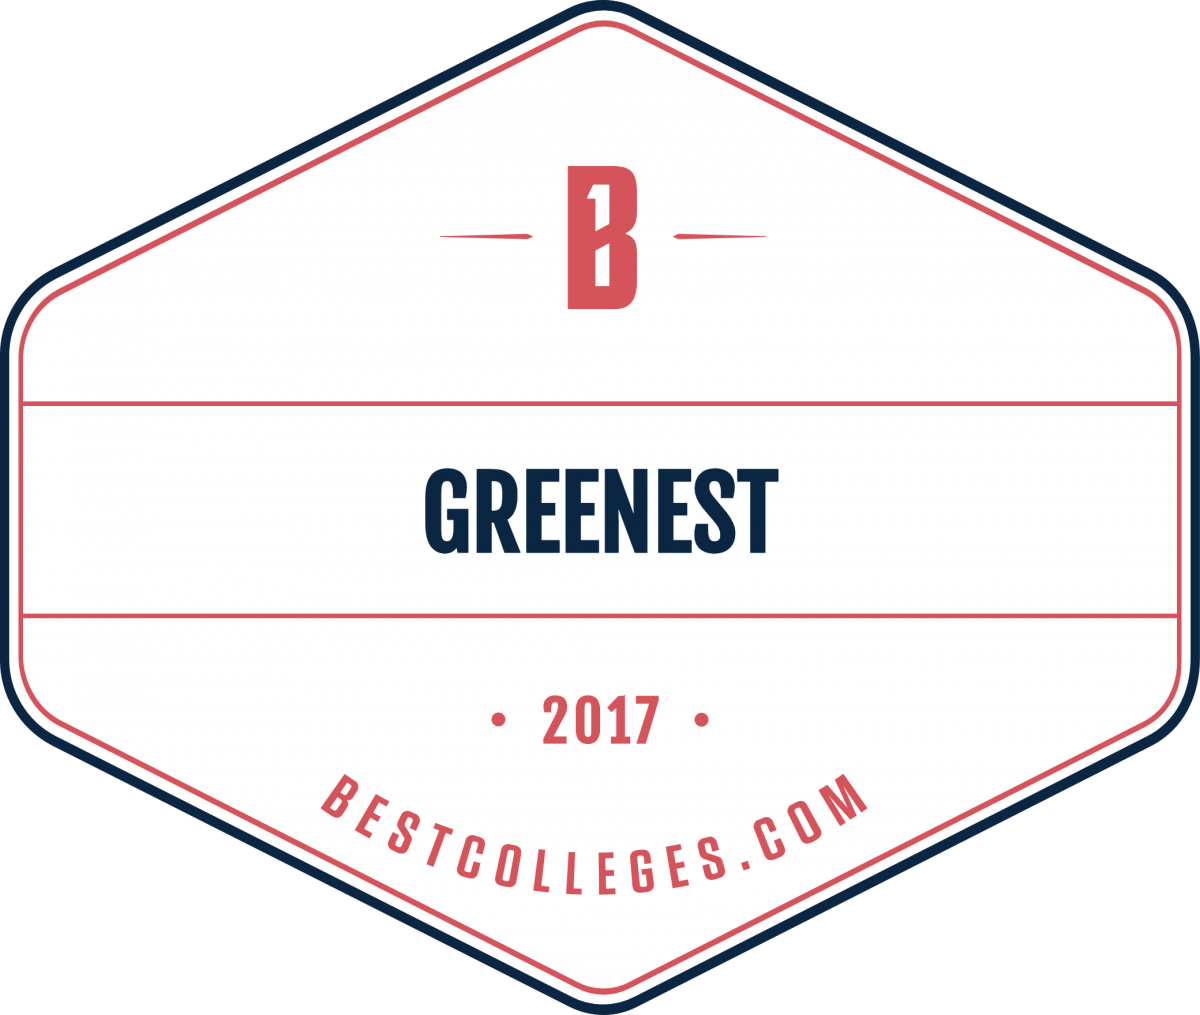 2017 Bestcolleges.com greenest schools logo